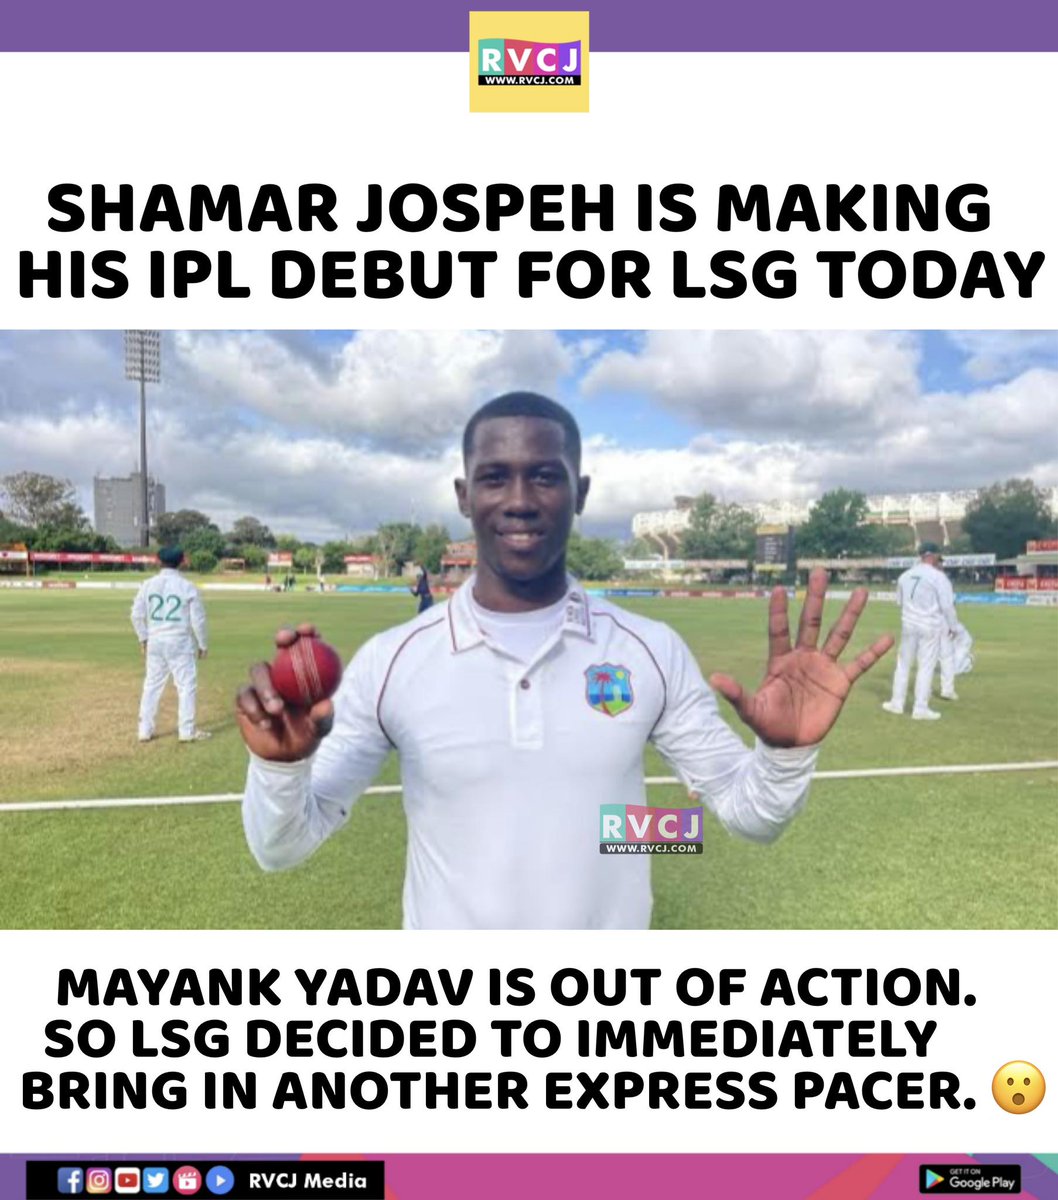 Shamar Joseph
#shamarjoseph